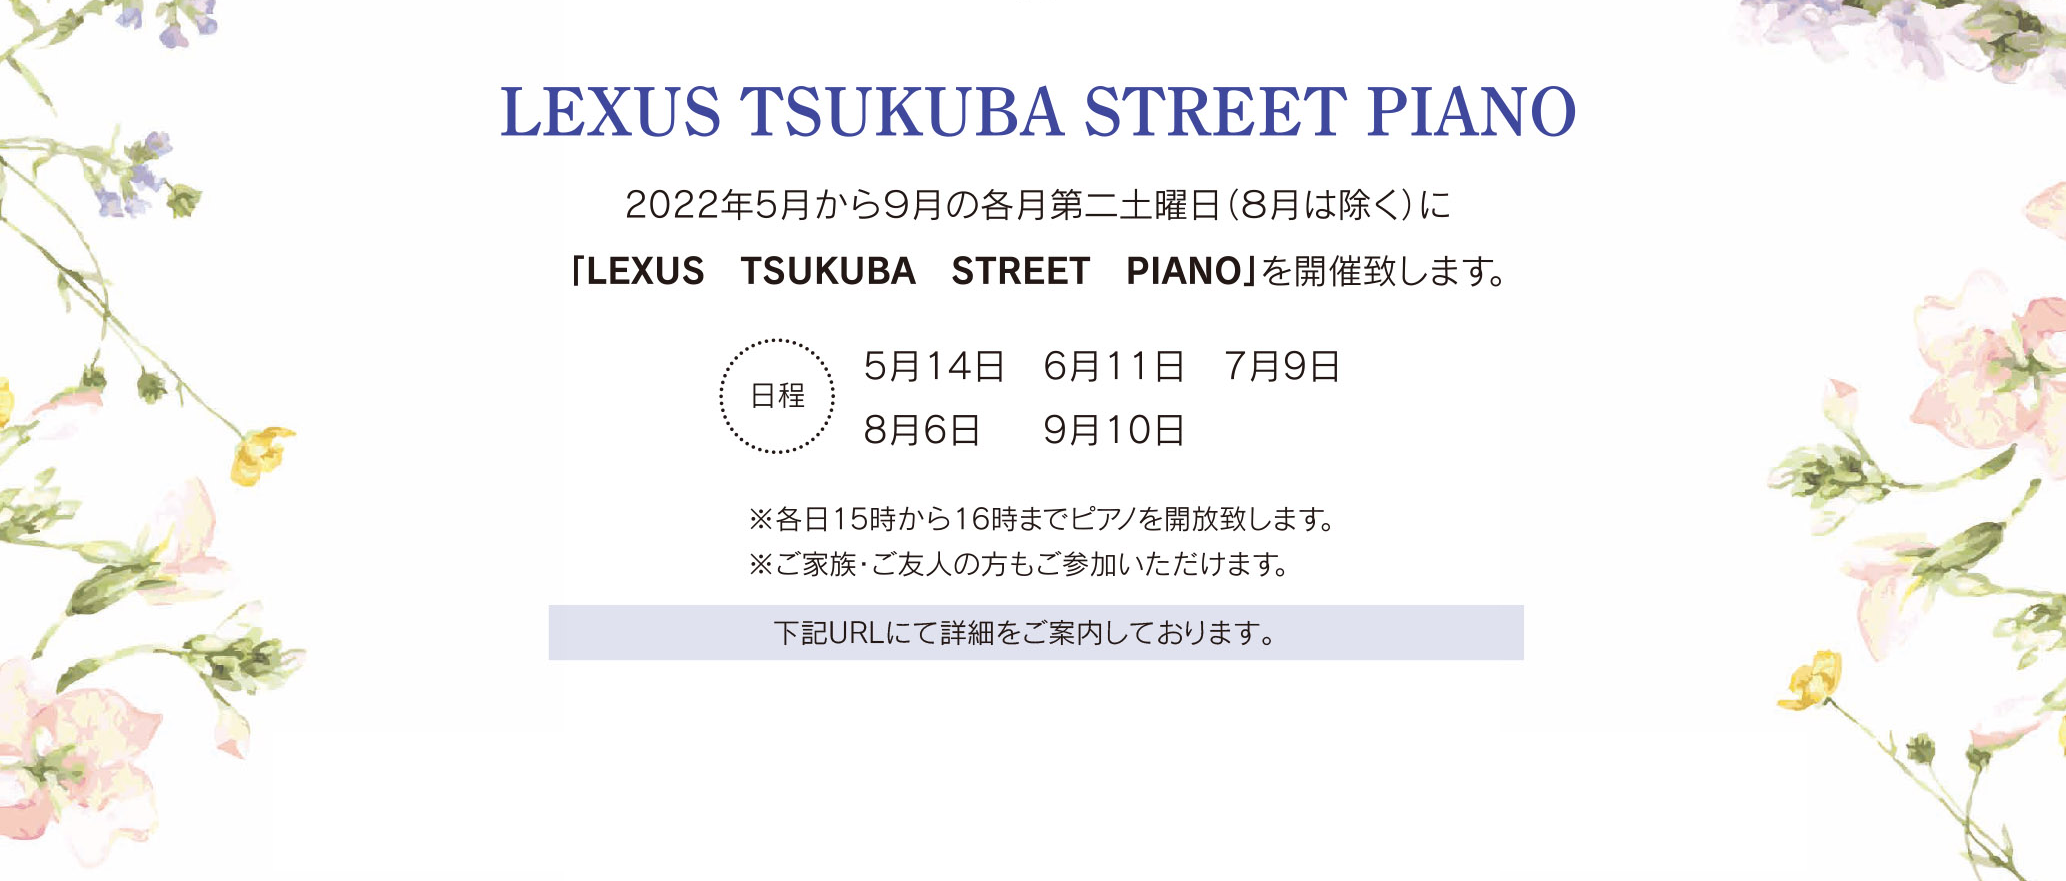 LEXUS TSUKUBA STREET PIANO